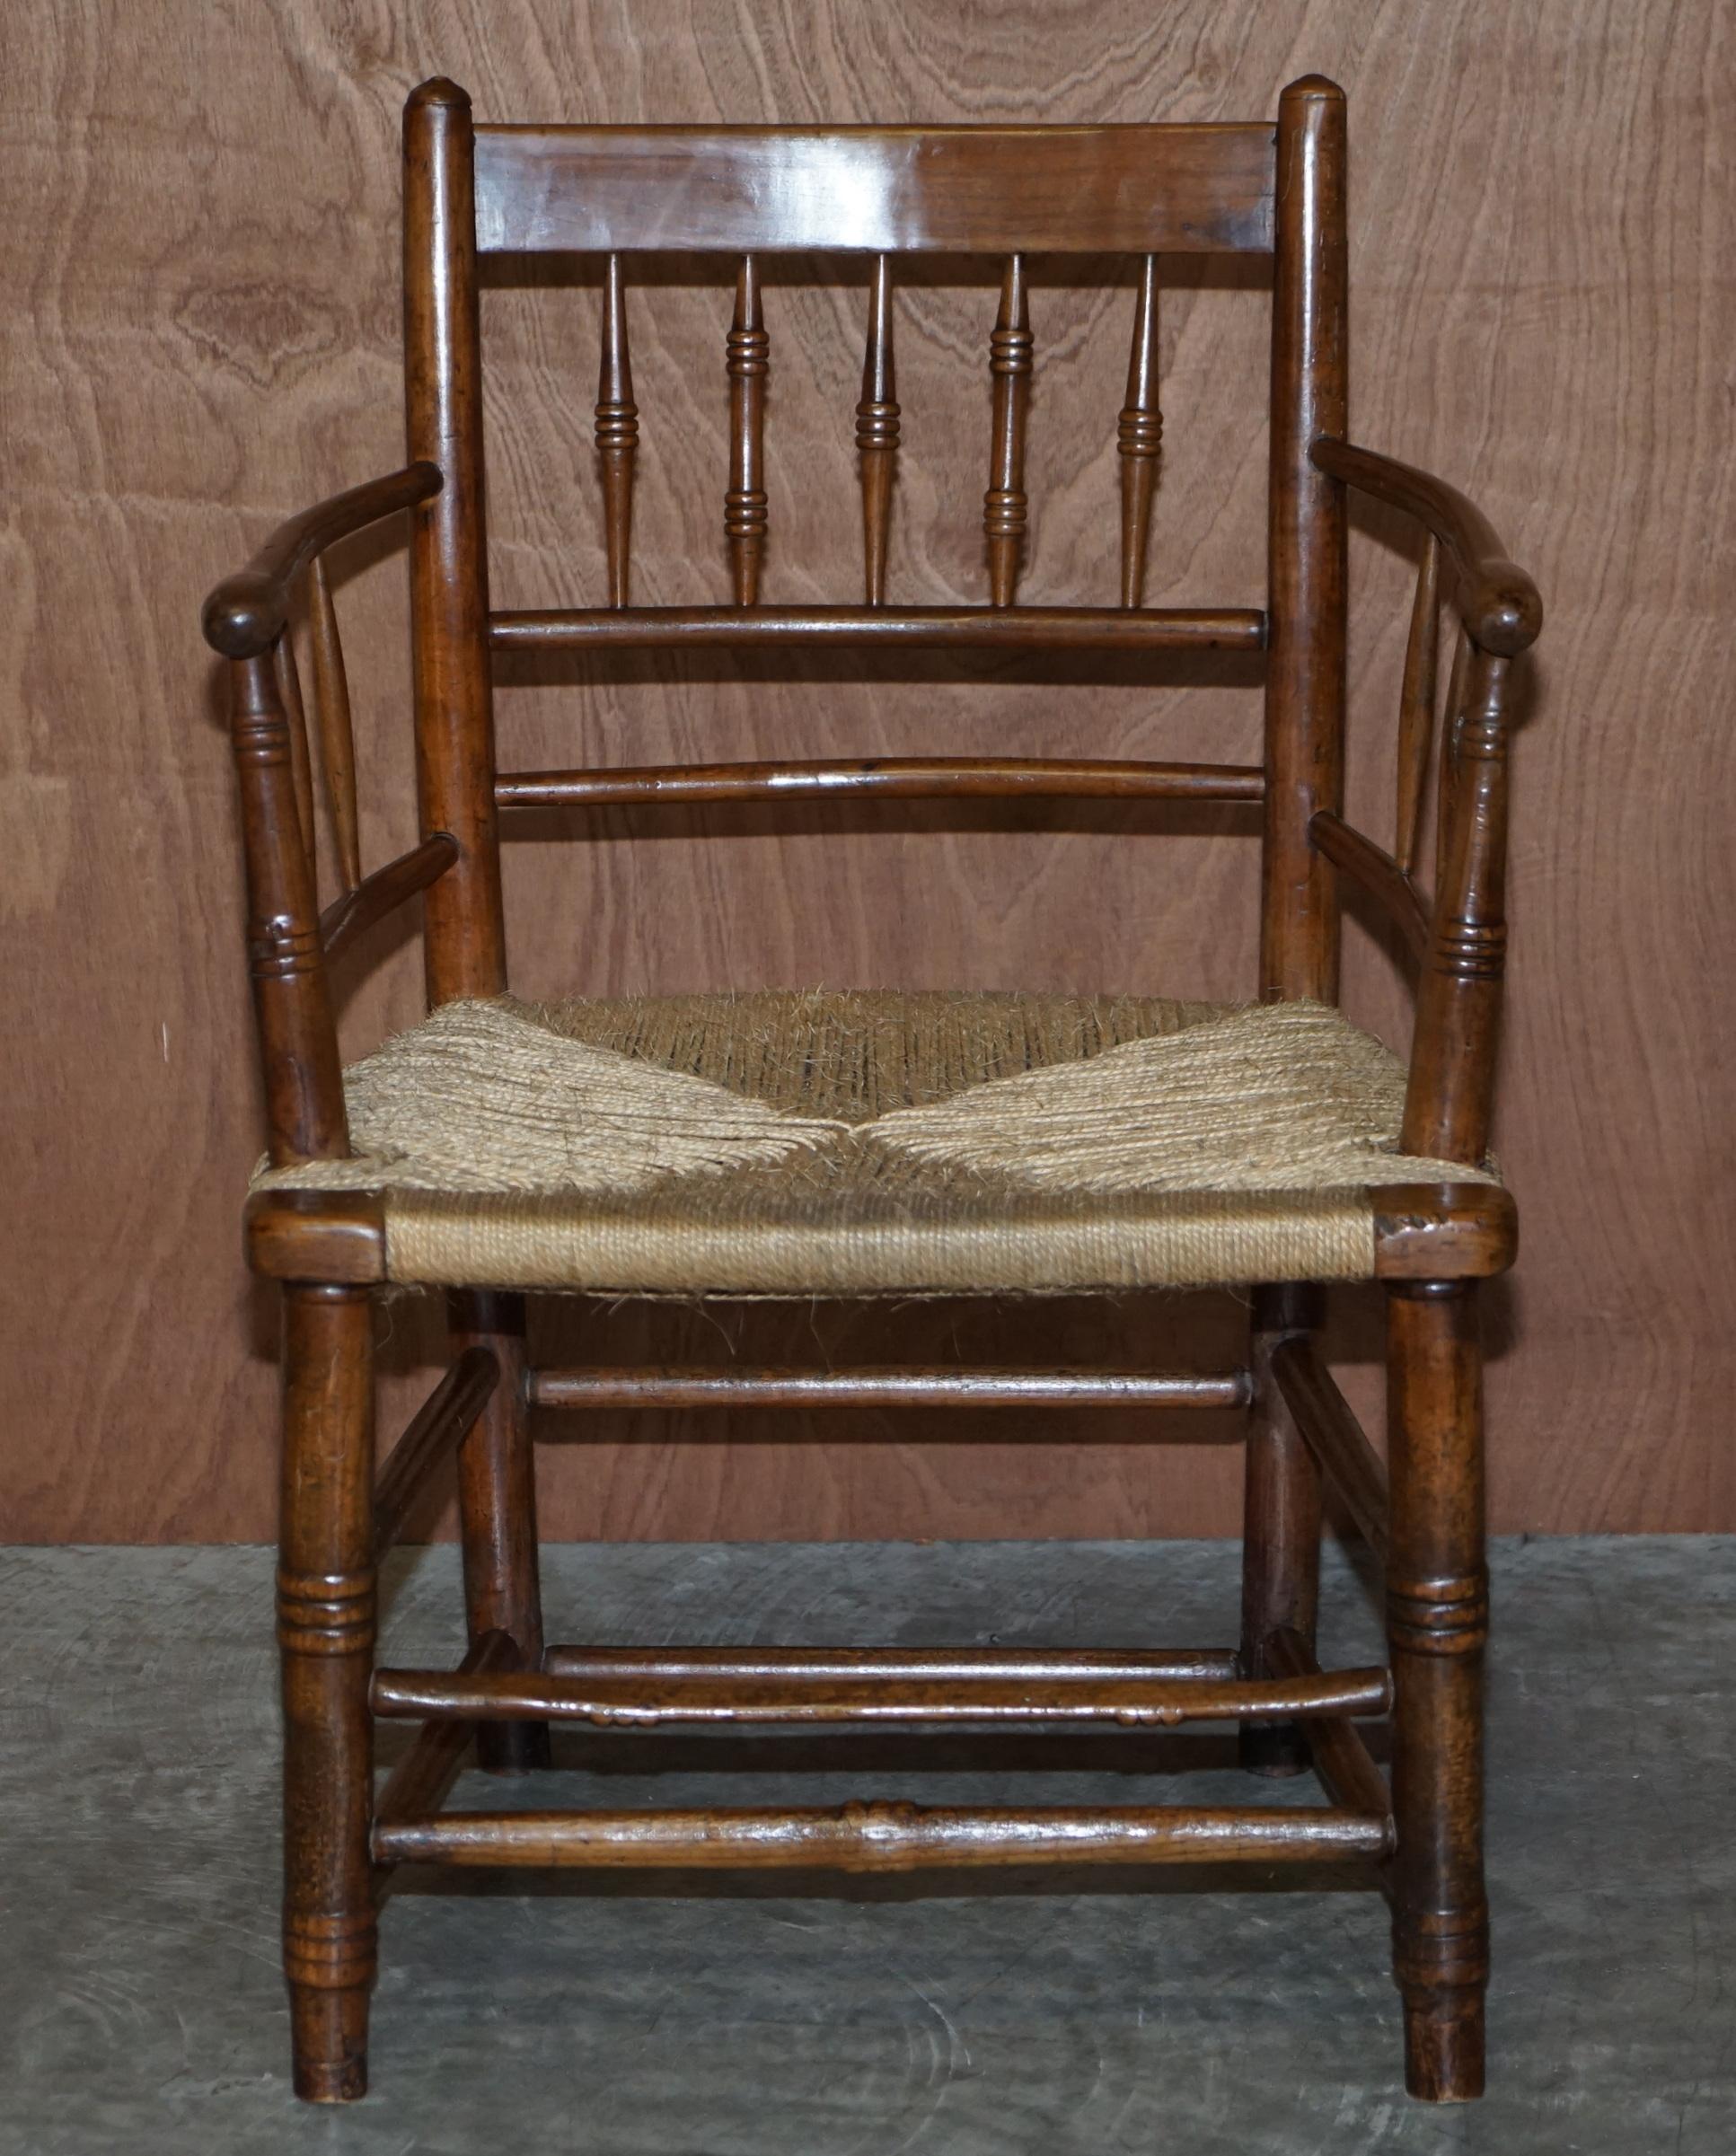 Nous sommes ravis d'offrir à la vente cet adorable fauteuil de collection William Morris Rush seat Sussex circa 1870-1880 tel que vu au Victorian and Albert Museum.

L'histoire Cette chaise a été nommée d'après une chaise de campagne trouvée dans